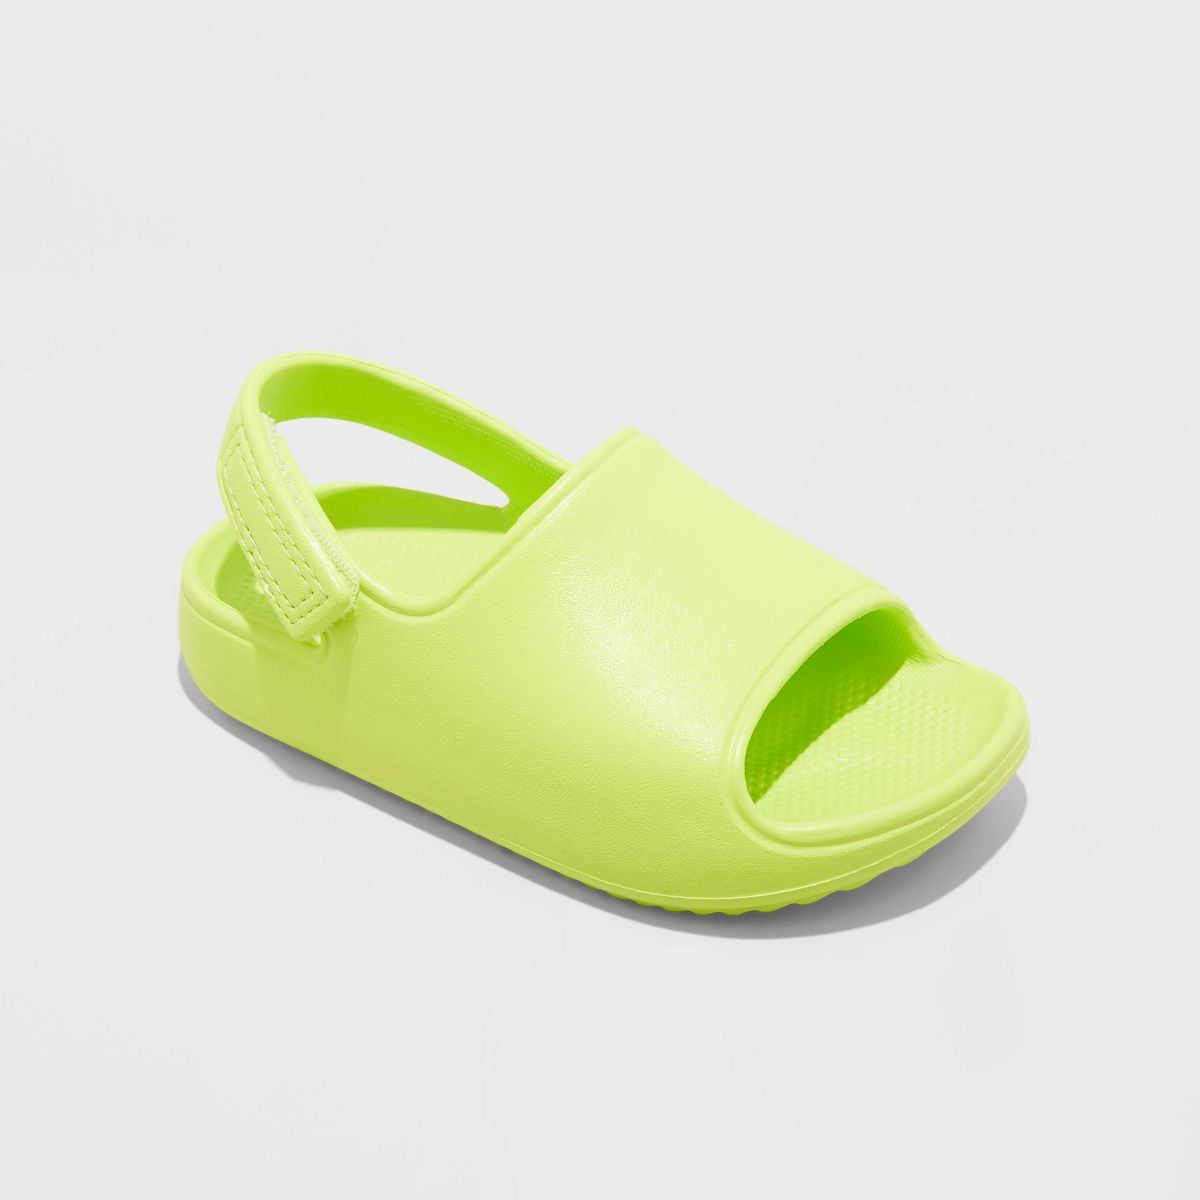 Toddler Beck Footbed Sandals - Cat & Jack™ Lime Green 5T | Target